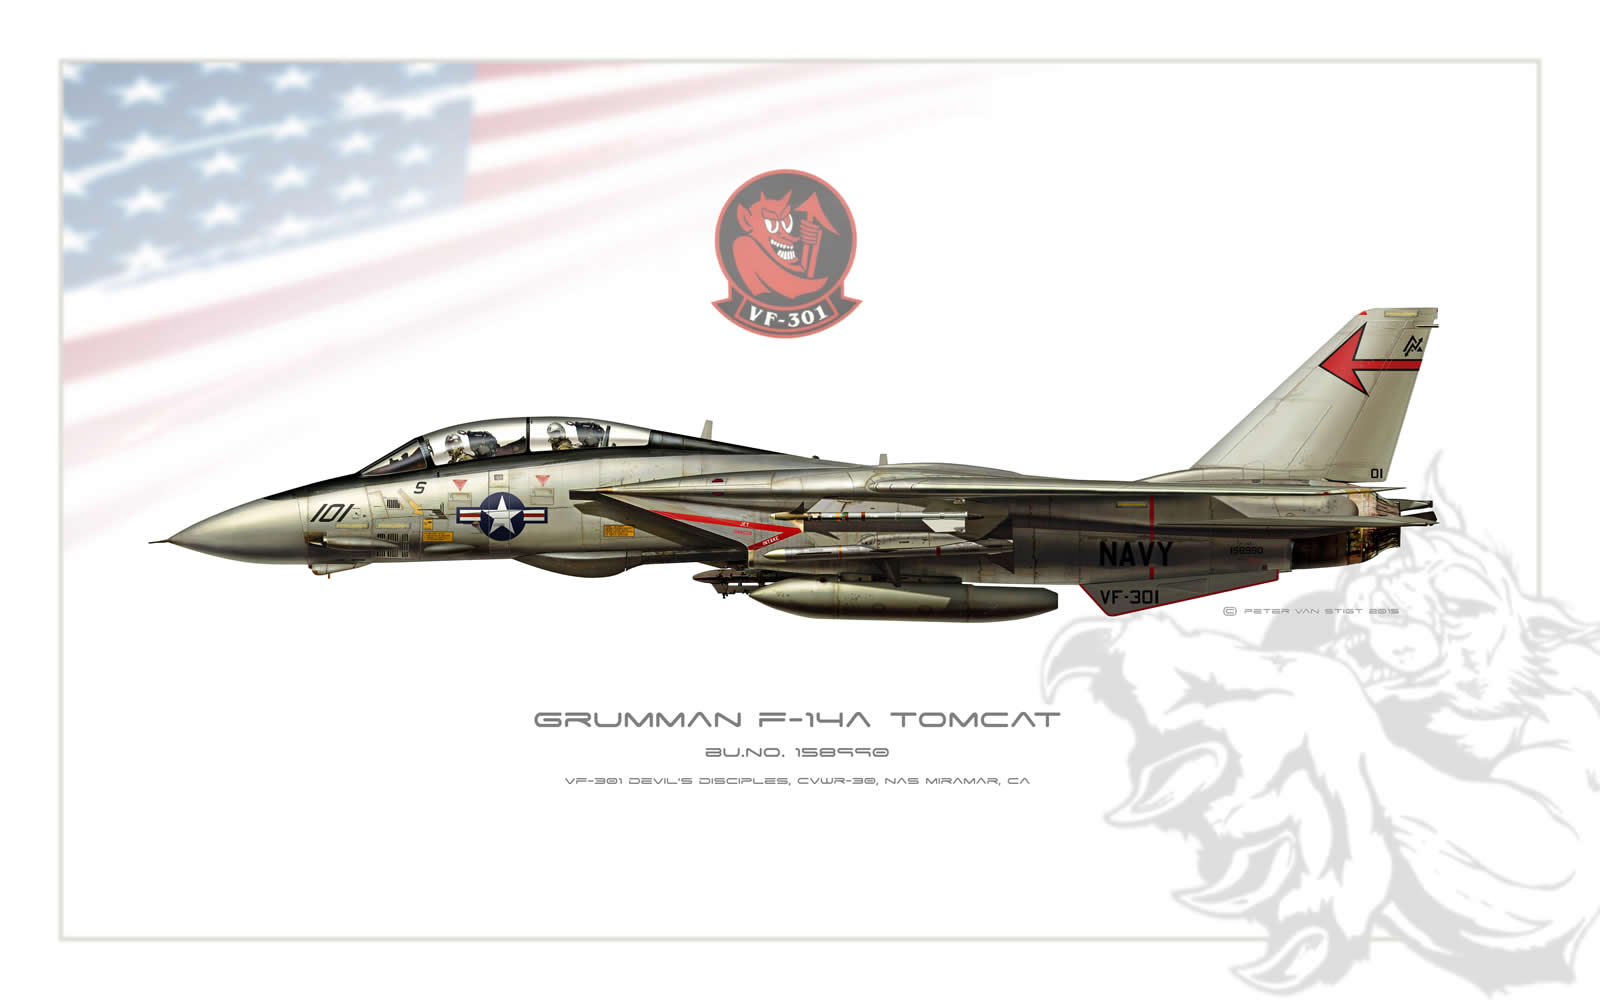 VF-301 Devil's Disciples F-14 Tomcat Profile